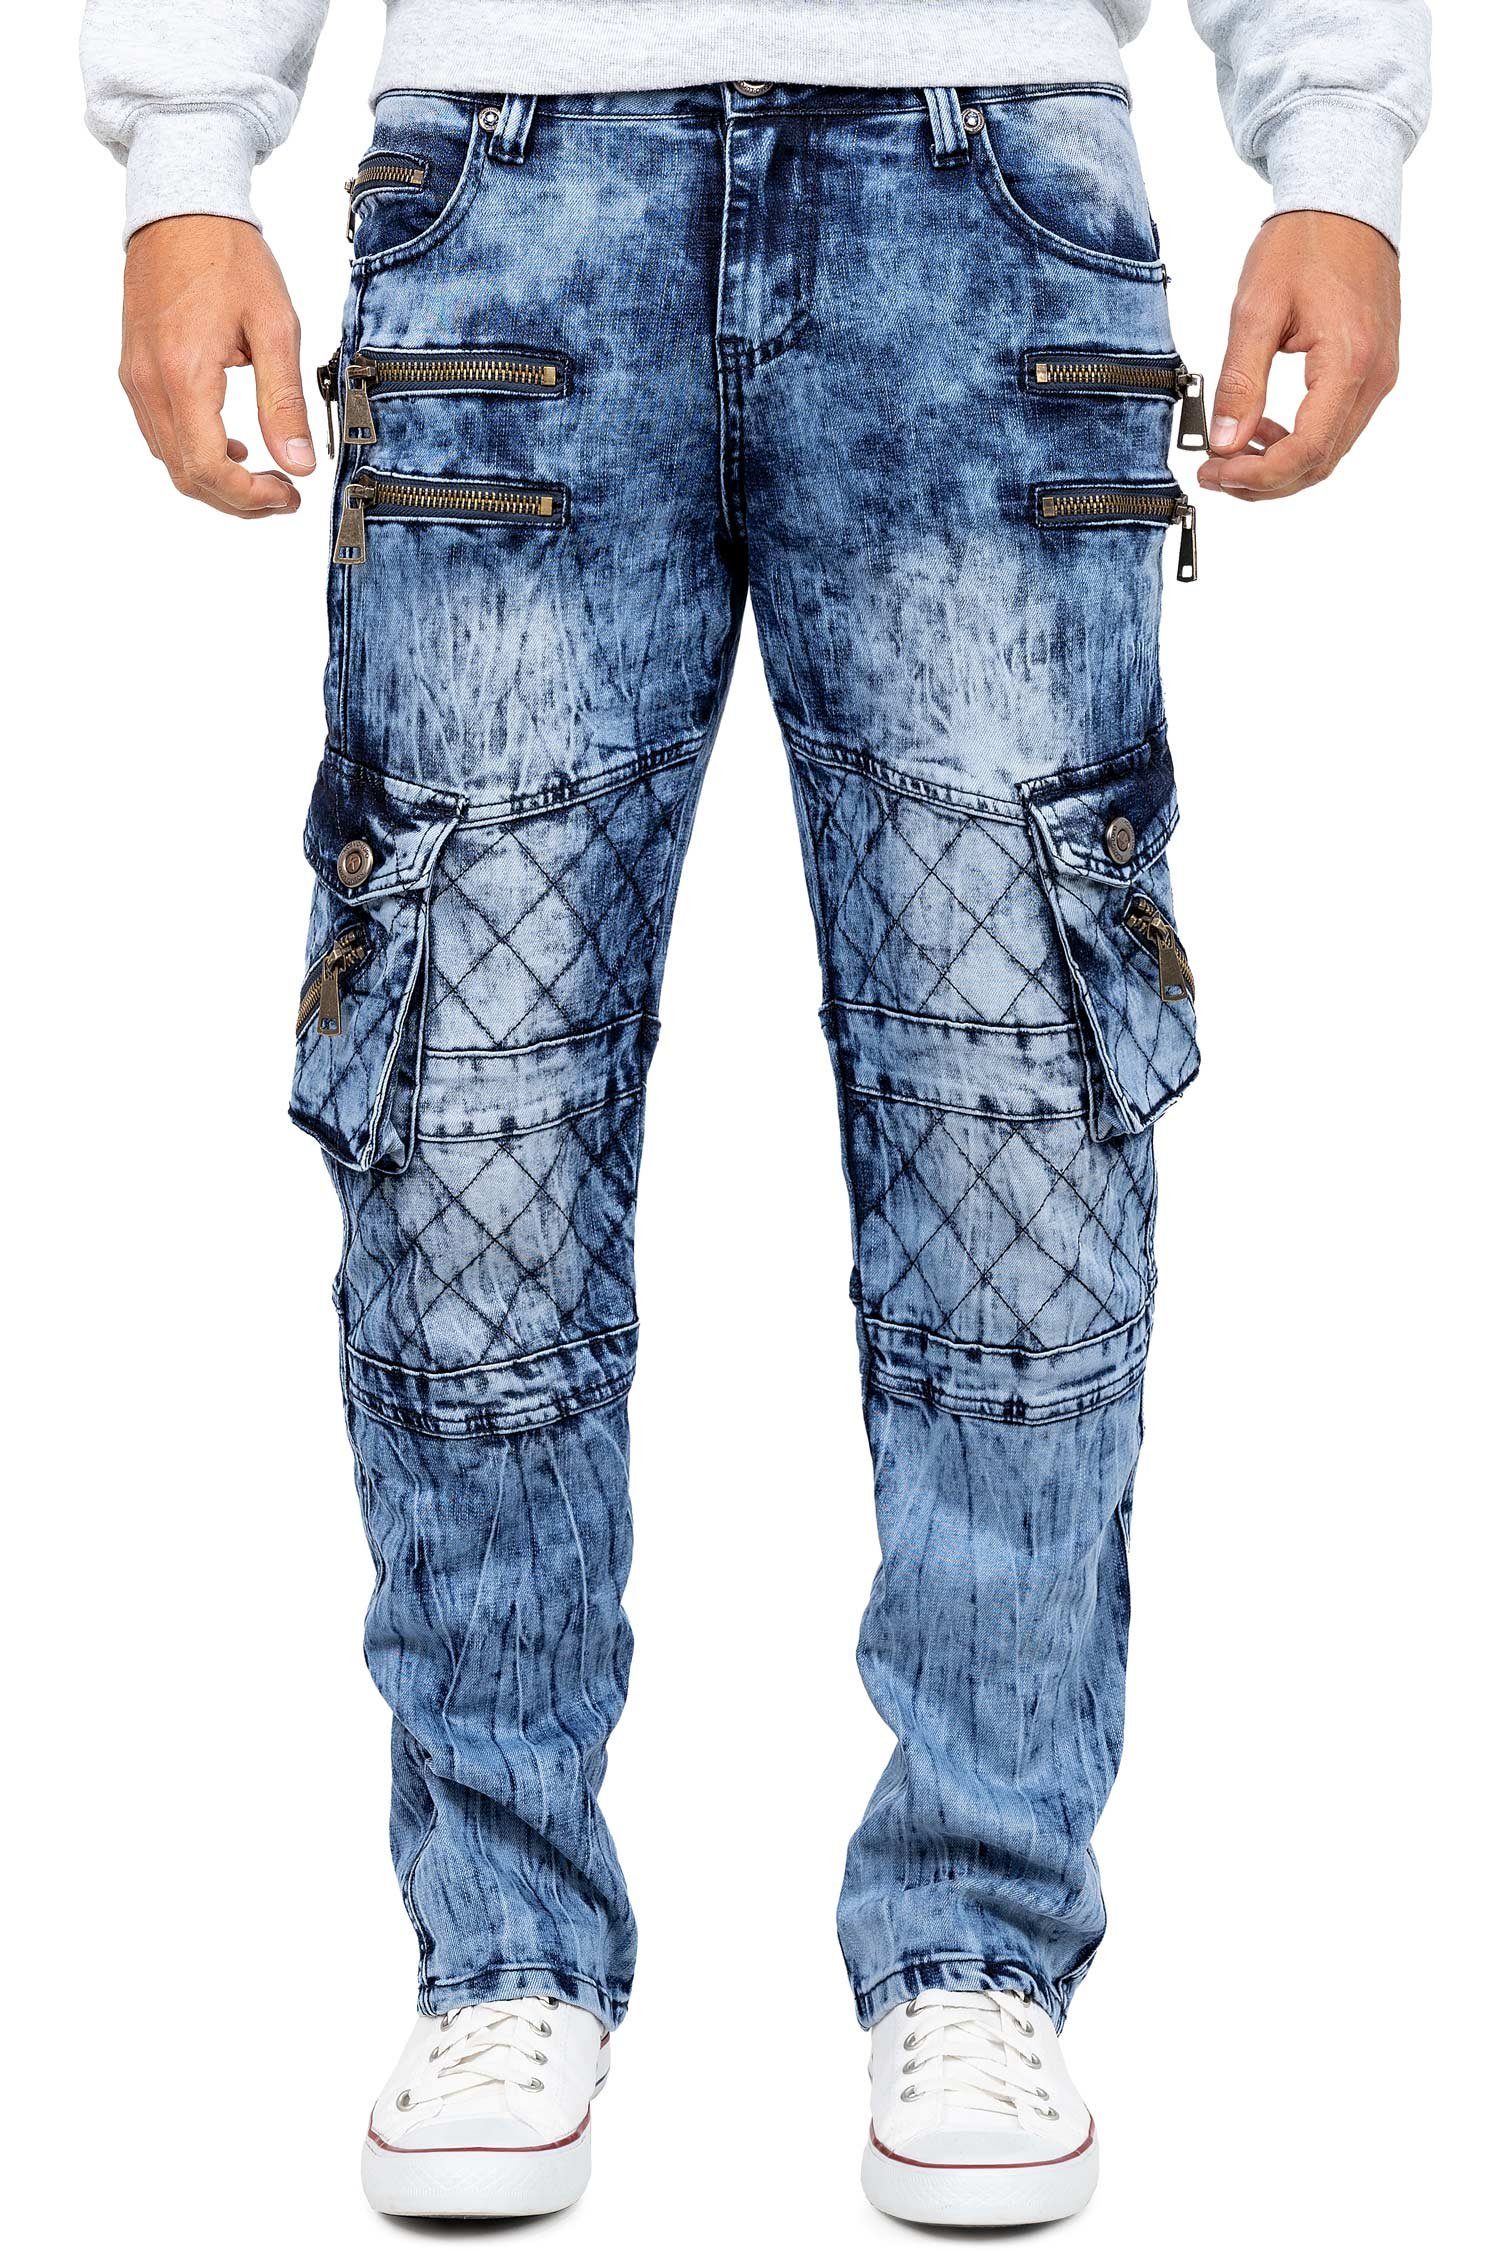 Kosmo Lupo 5-Pocket-Jeans Auffällige Herren Hose BA-KM060 mit Verzierungen und Nieten blau